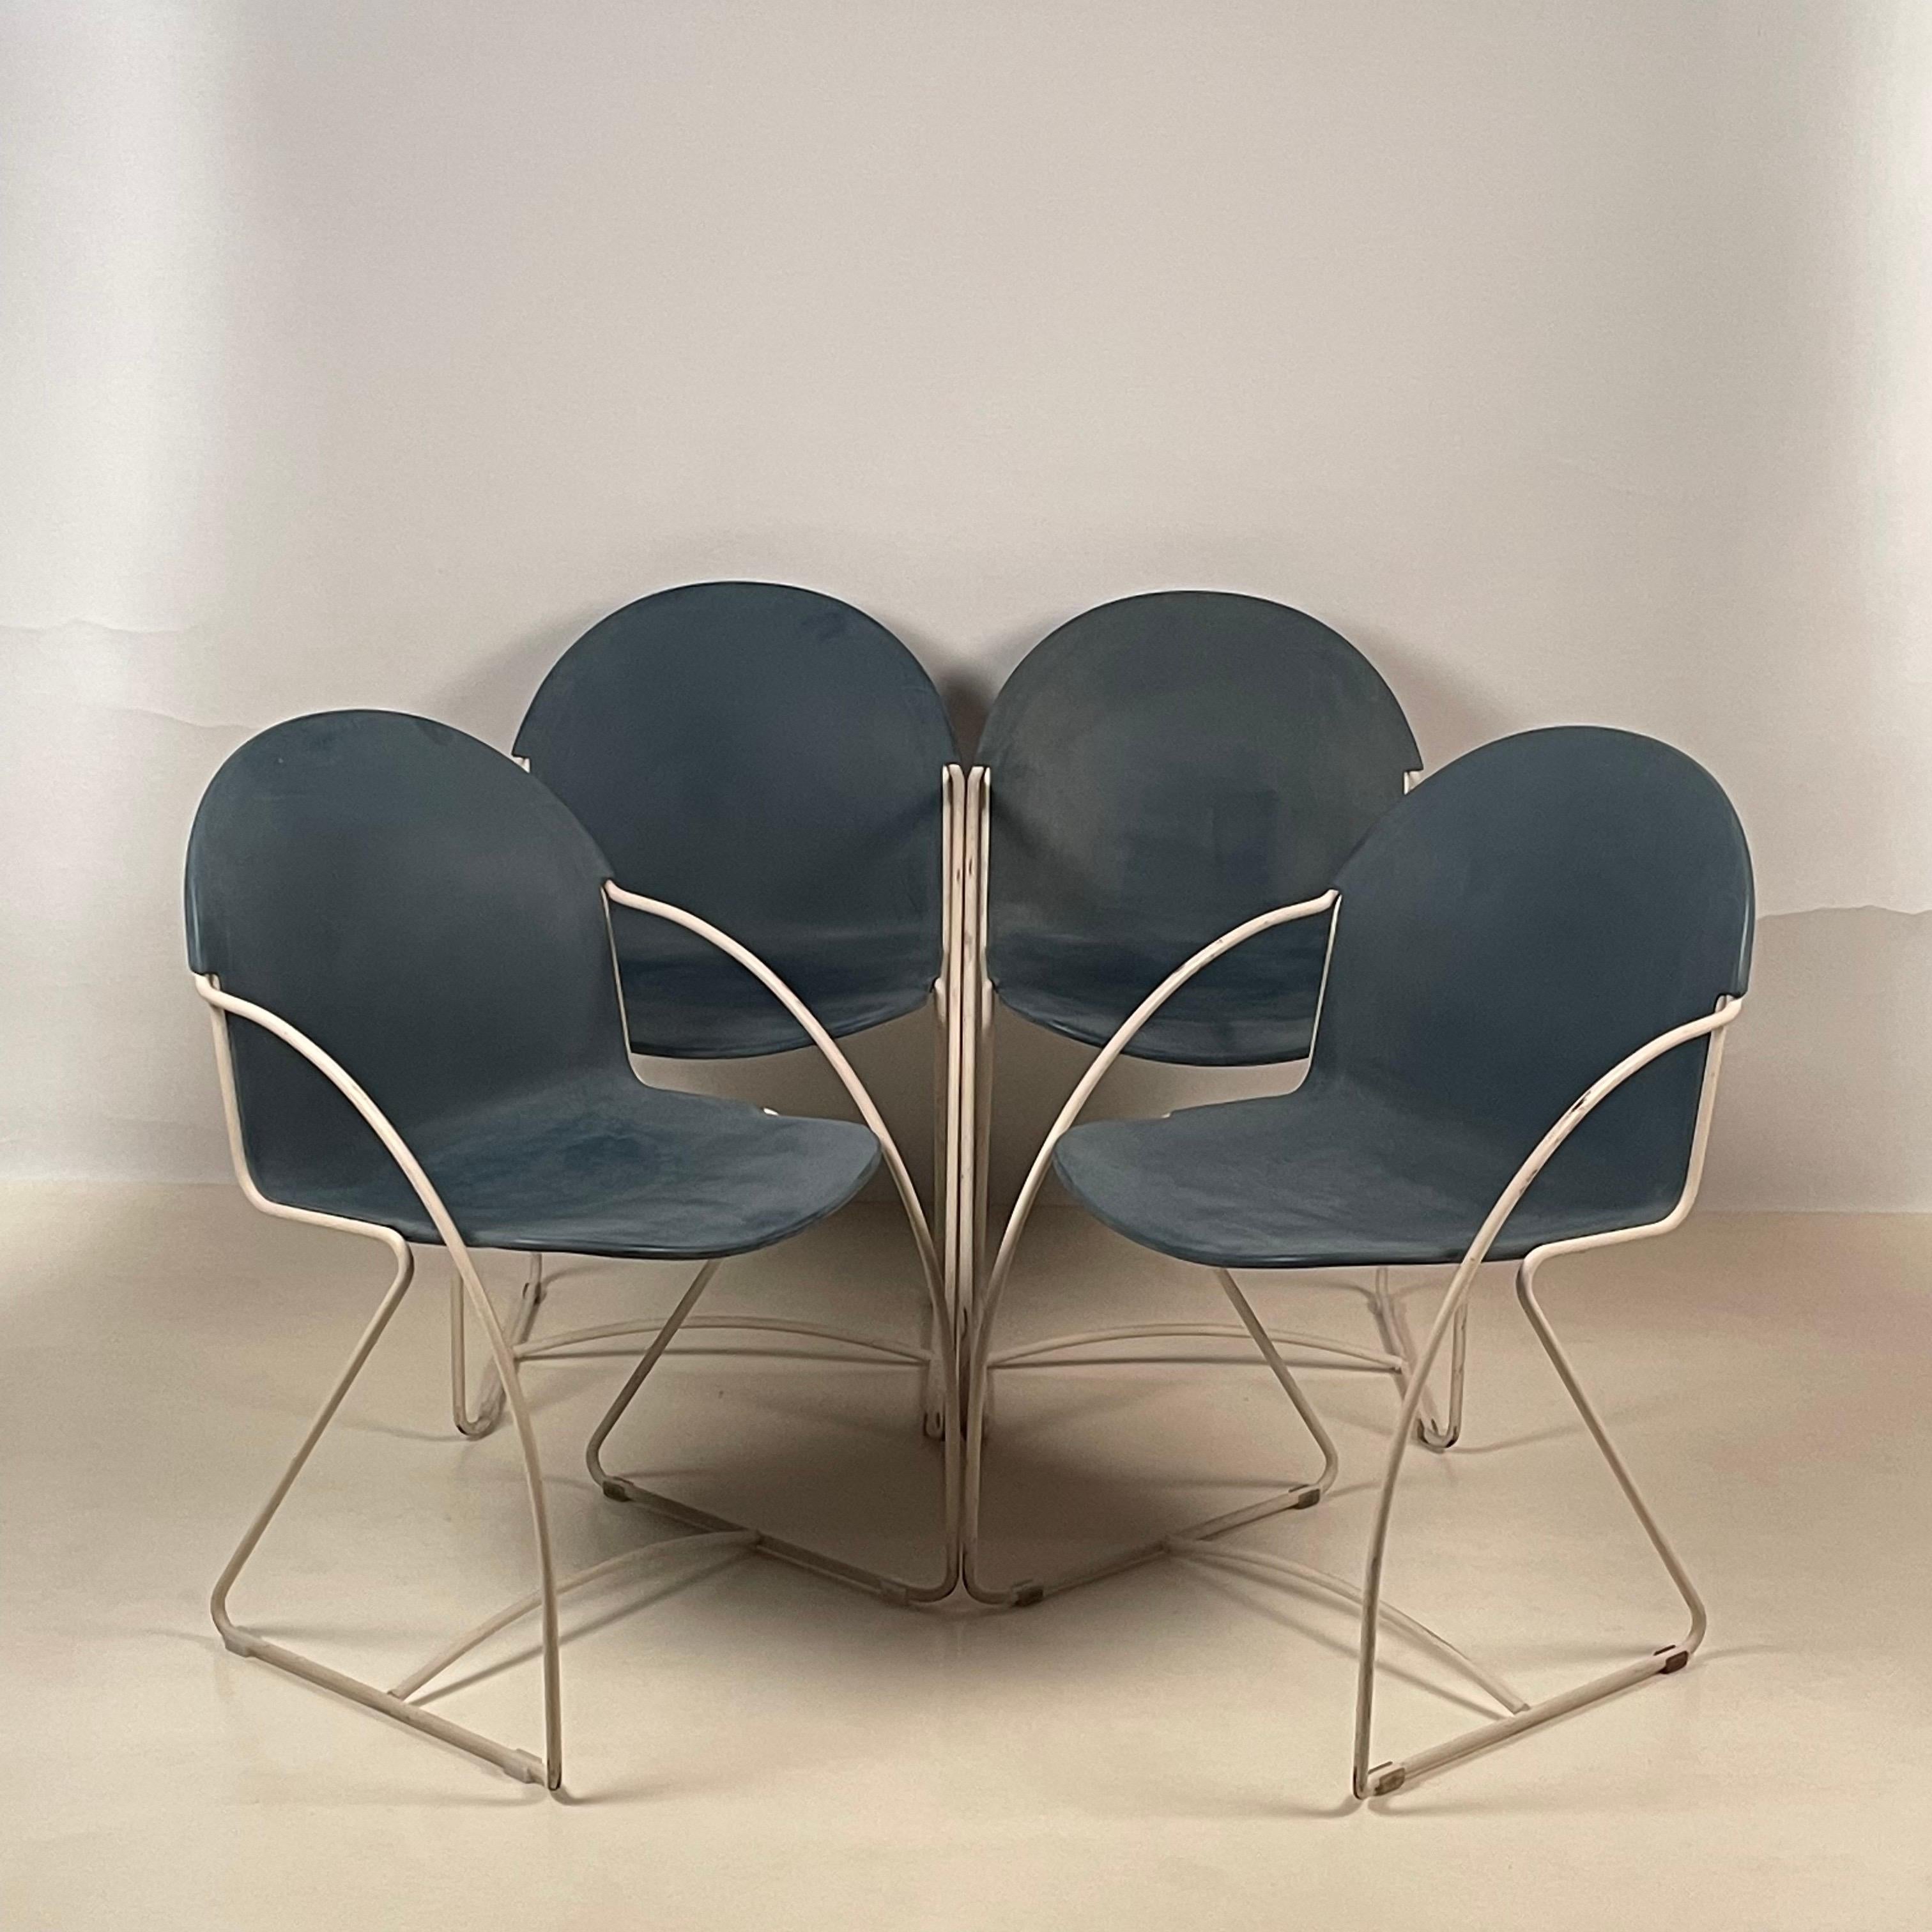 Ensemble de 4 chaises d'intérieur/extérieur post-modernes empilables en forme de coquille, émaillées.

Design/One. Très robuste et confortable.